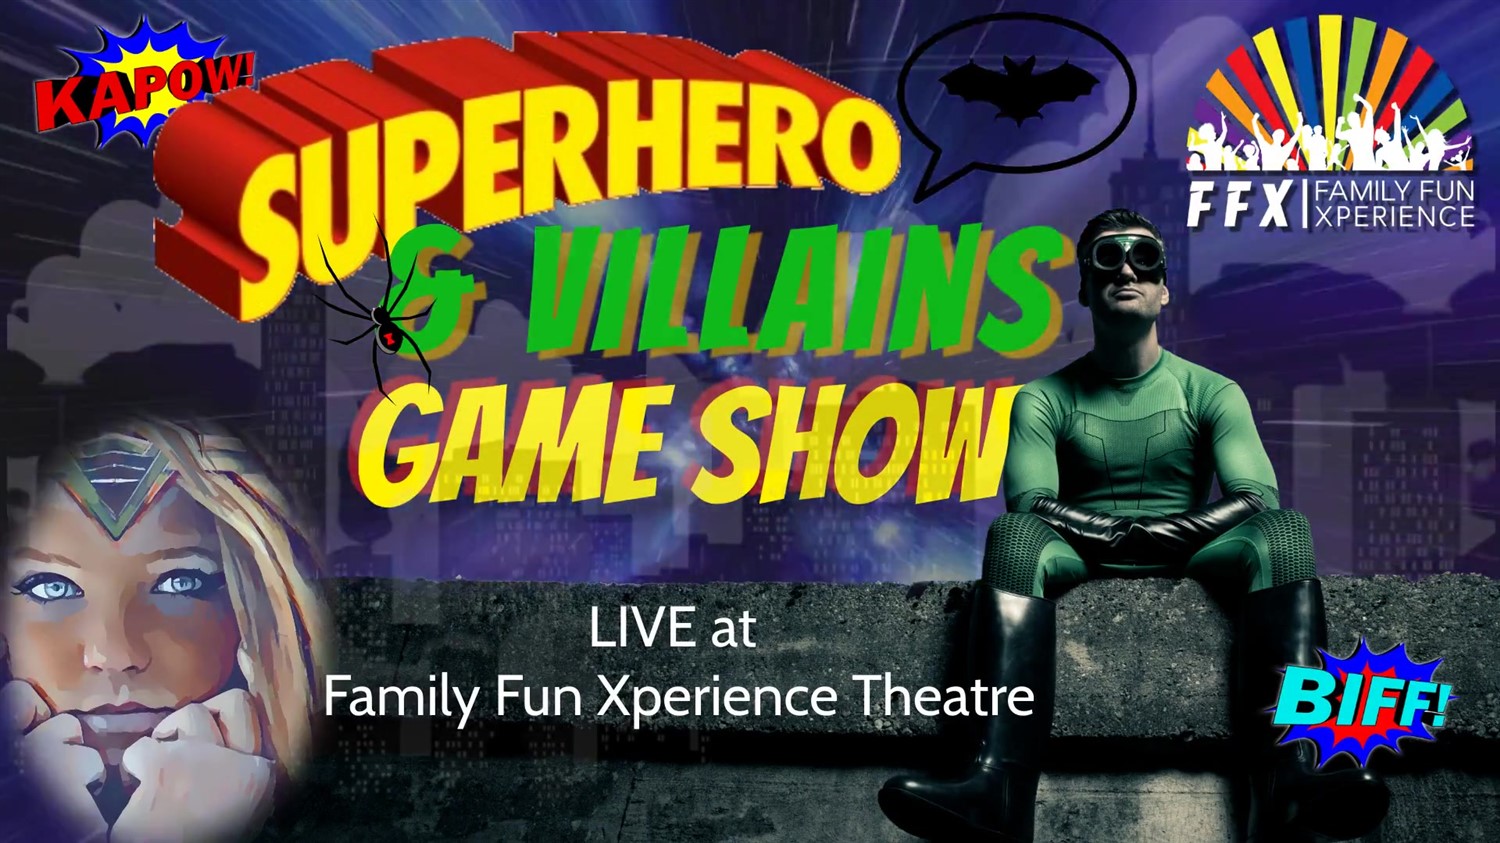 Superheroes & Villains: LIVE GAME SHOW!  on mars 01, 19:00@FFX Theatre - Achetez des billets et obtenez des informations surFamily Fun Xperience tickets.ffxshow.org